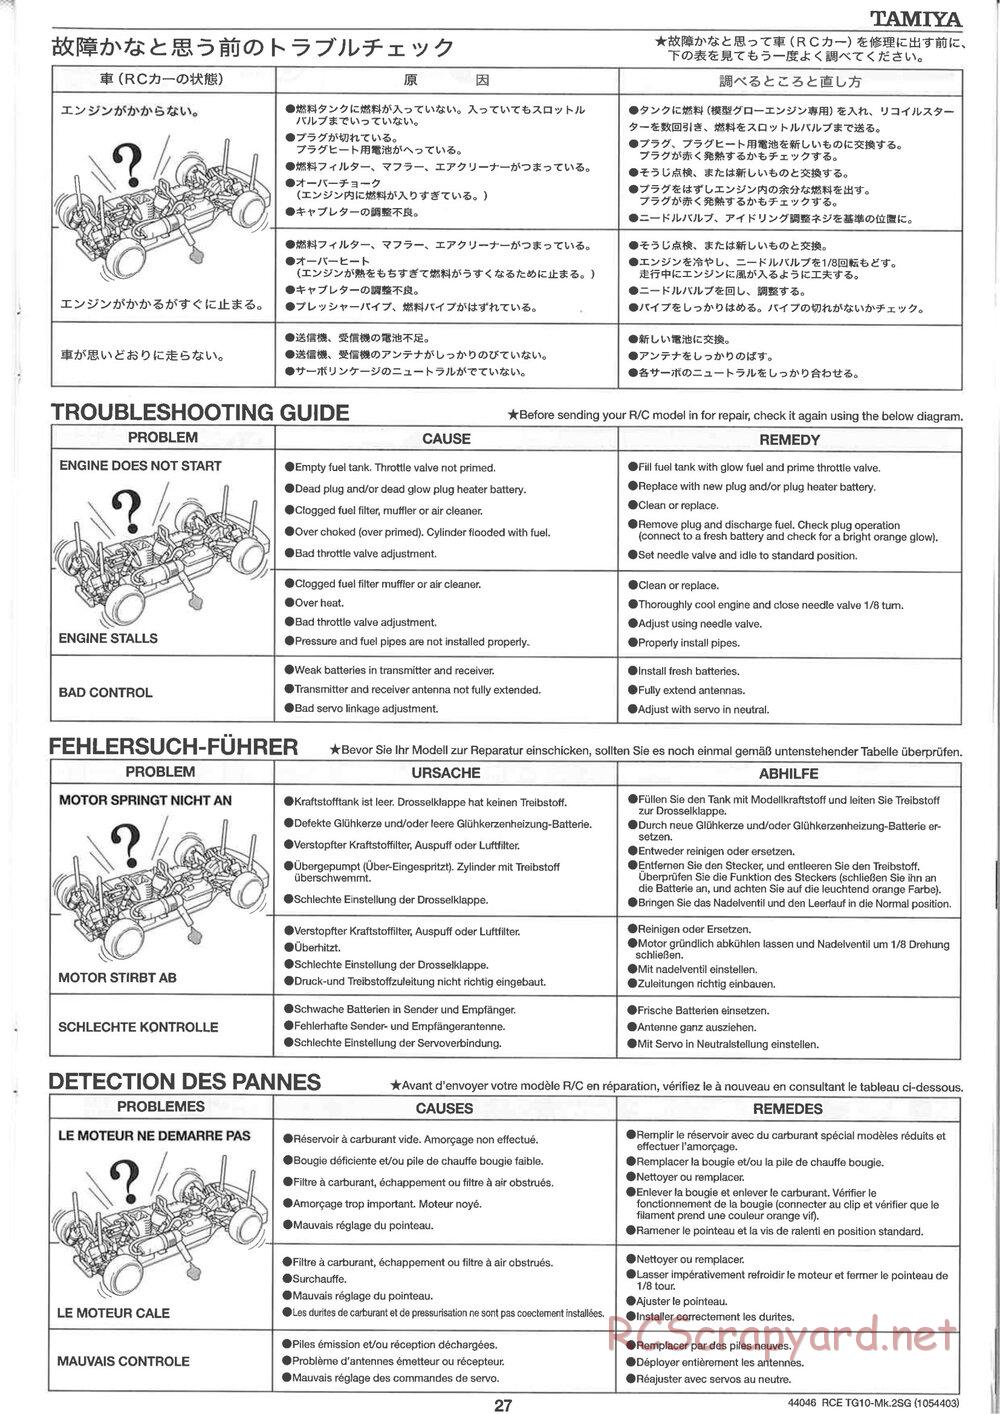 Tamiya - TG10 Mk.2SG Chassis - Manual - Page 27